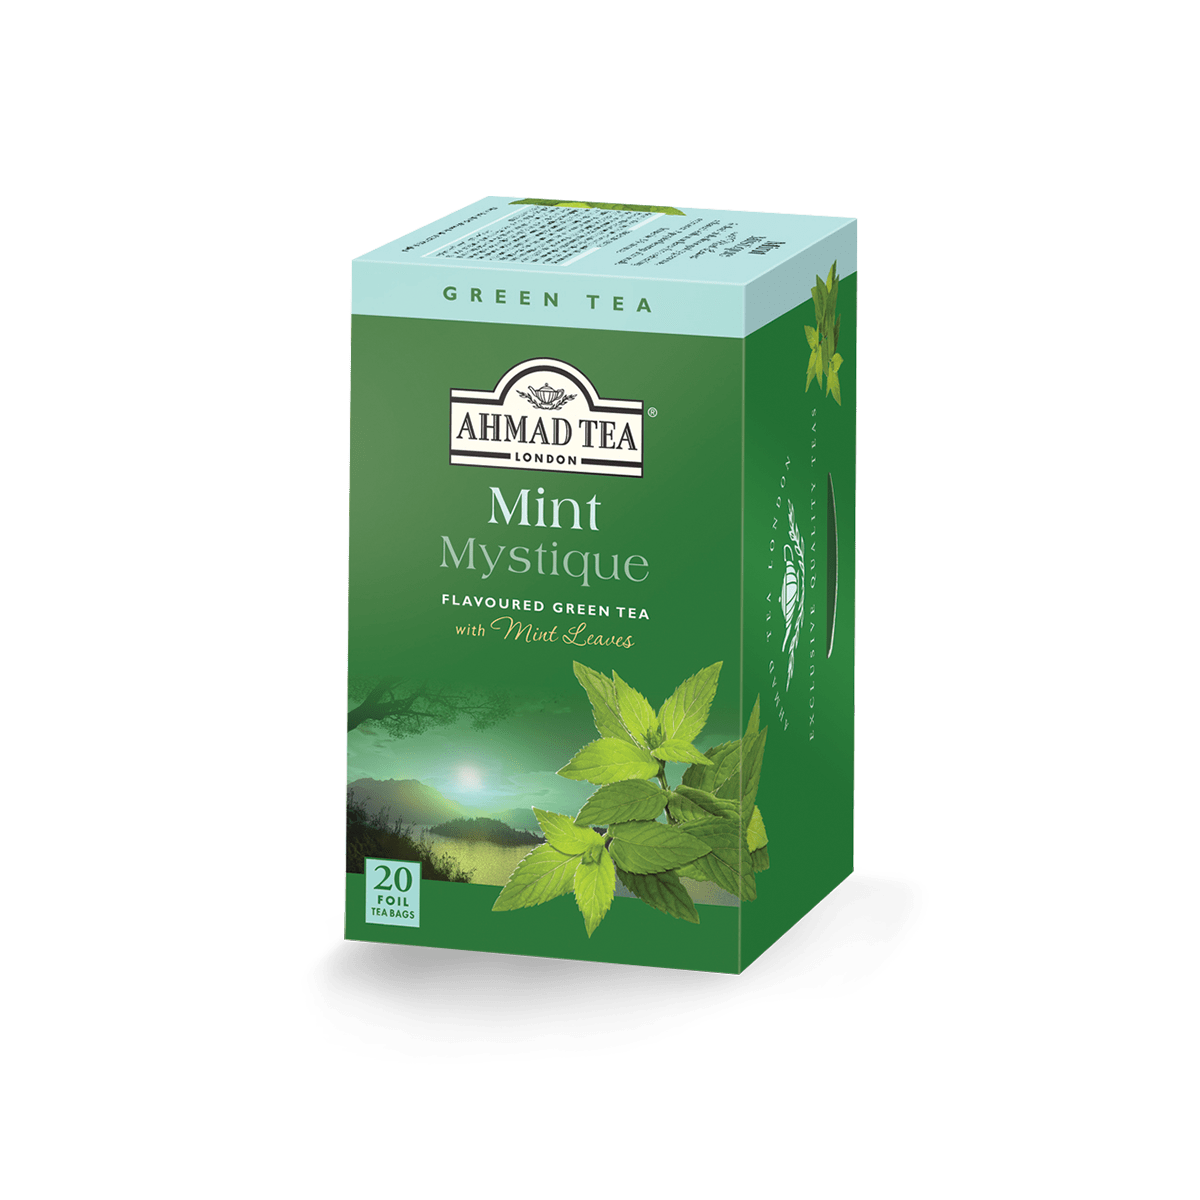 green tea png